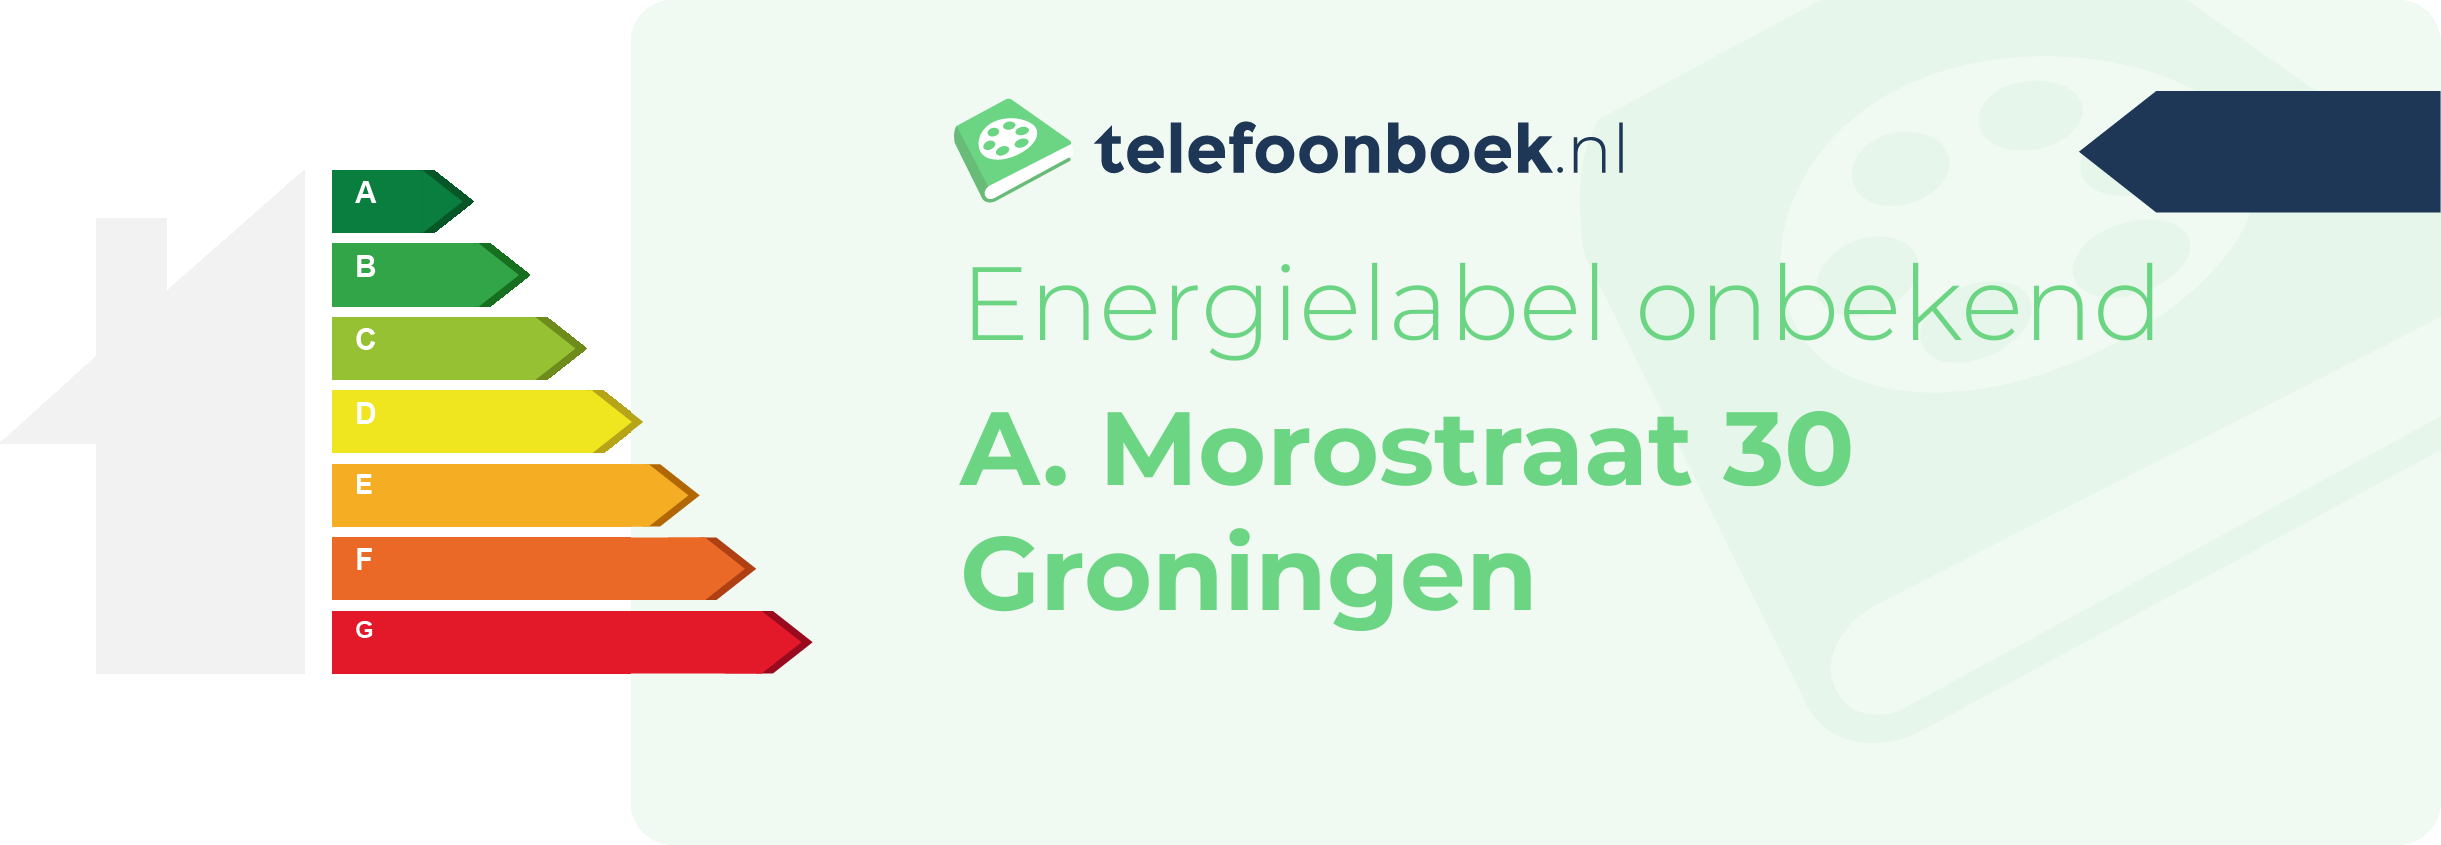 Energielabel A. Morostraat 30 Groningen